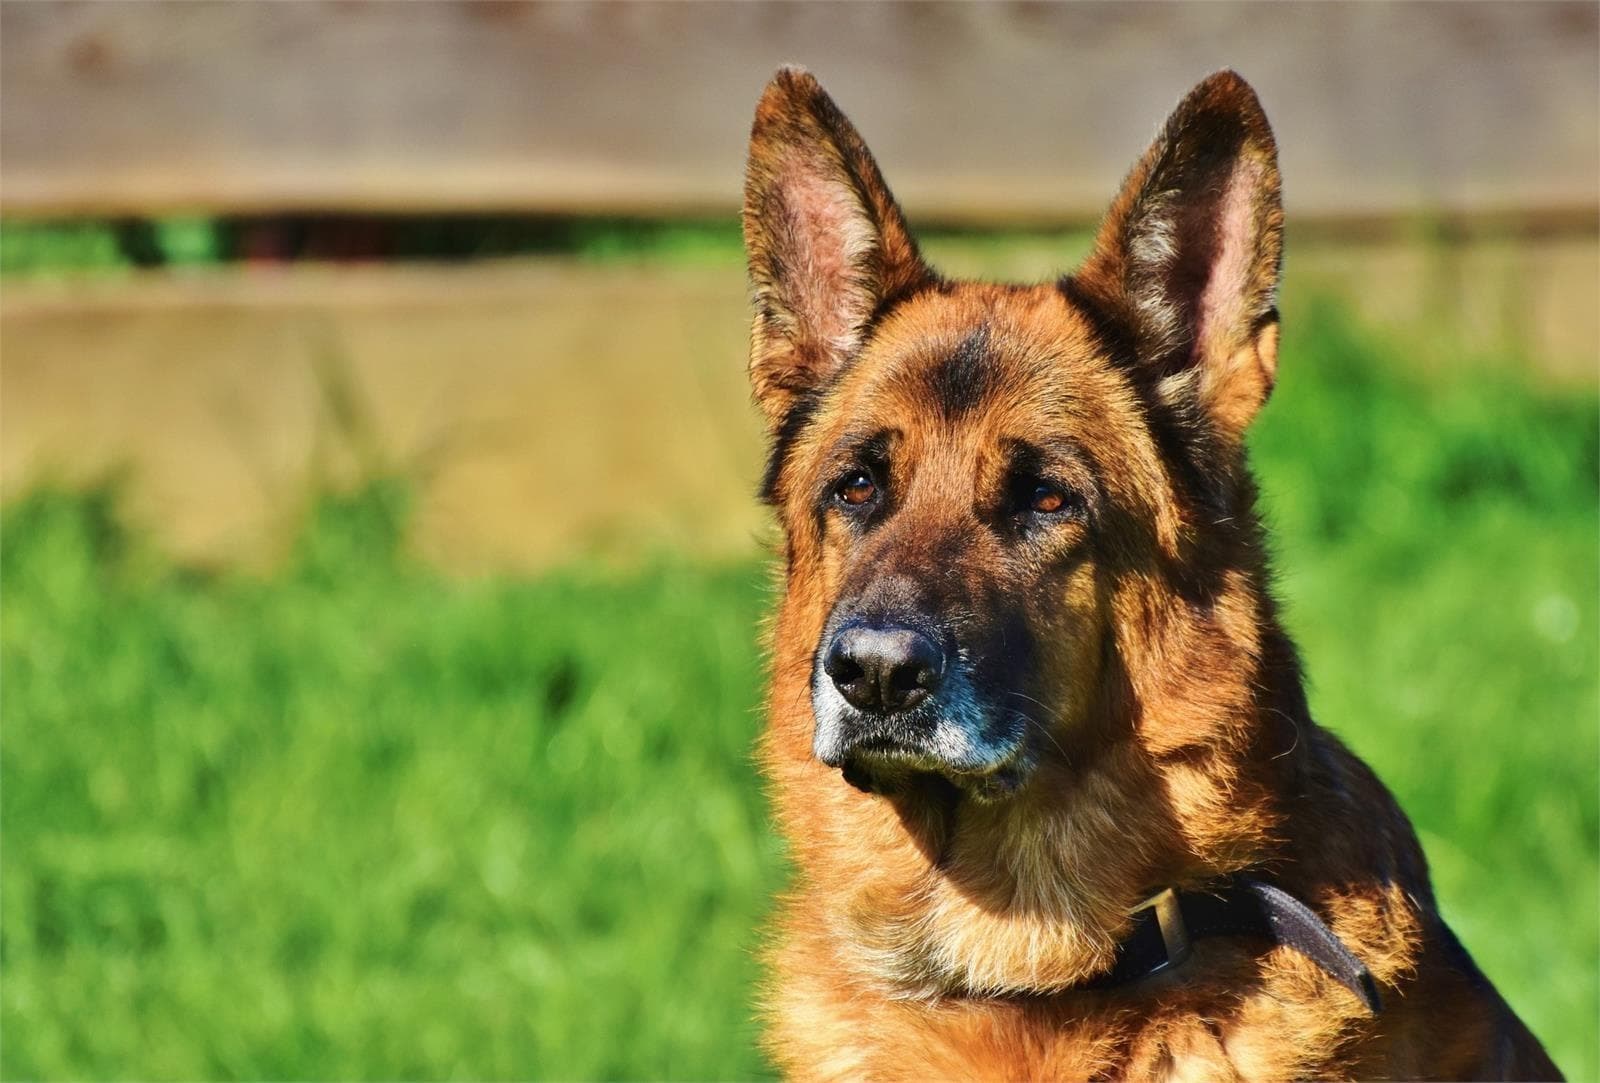 Torsión de bazo en perro: síntomas, causas y tratamientos - Imagen 3